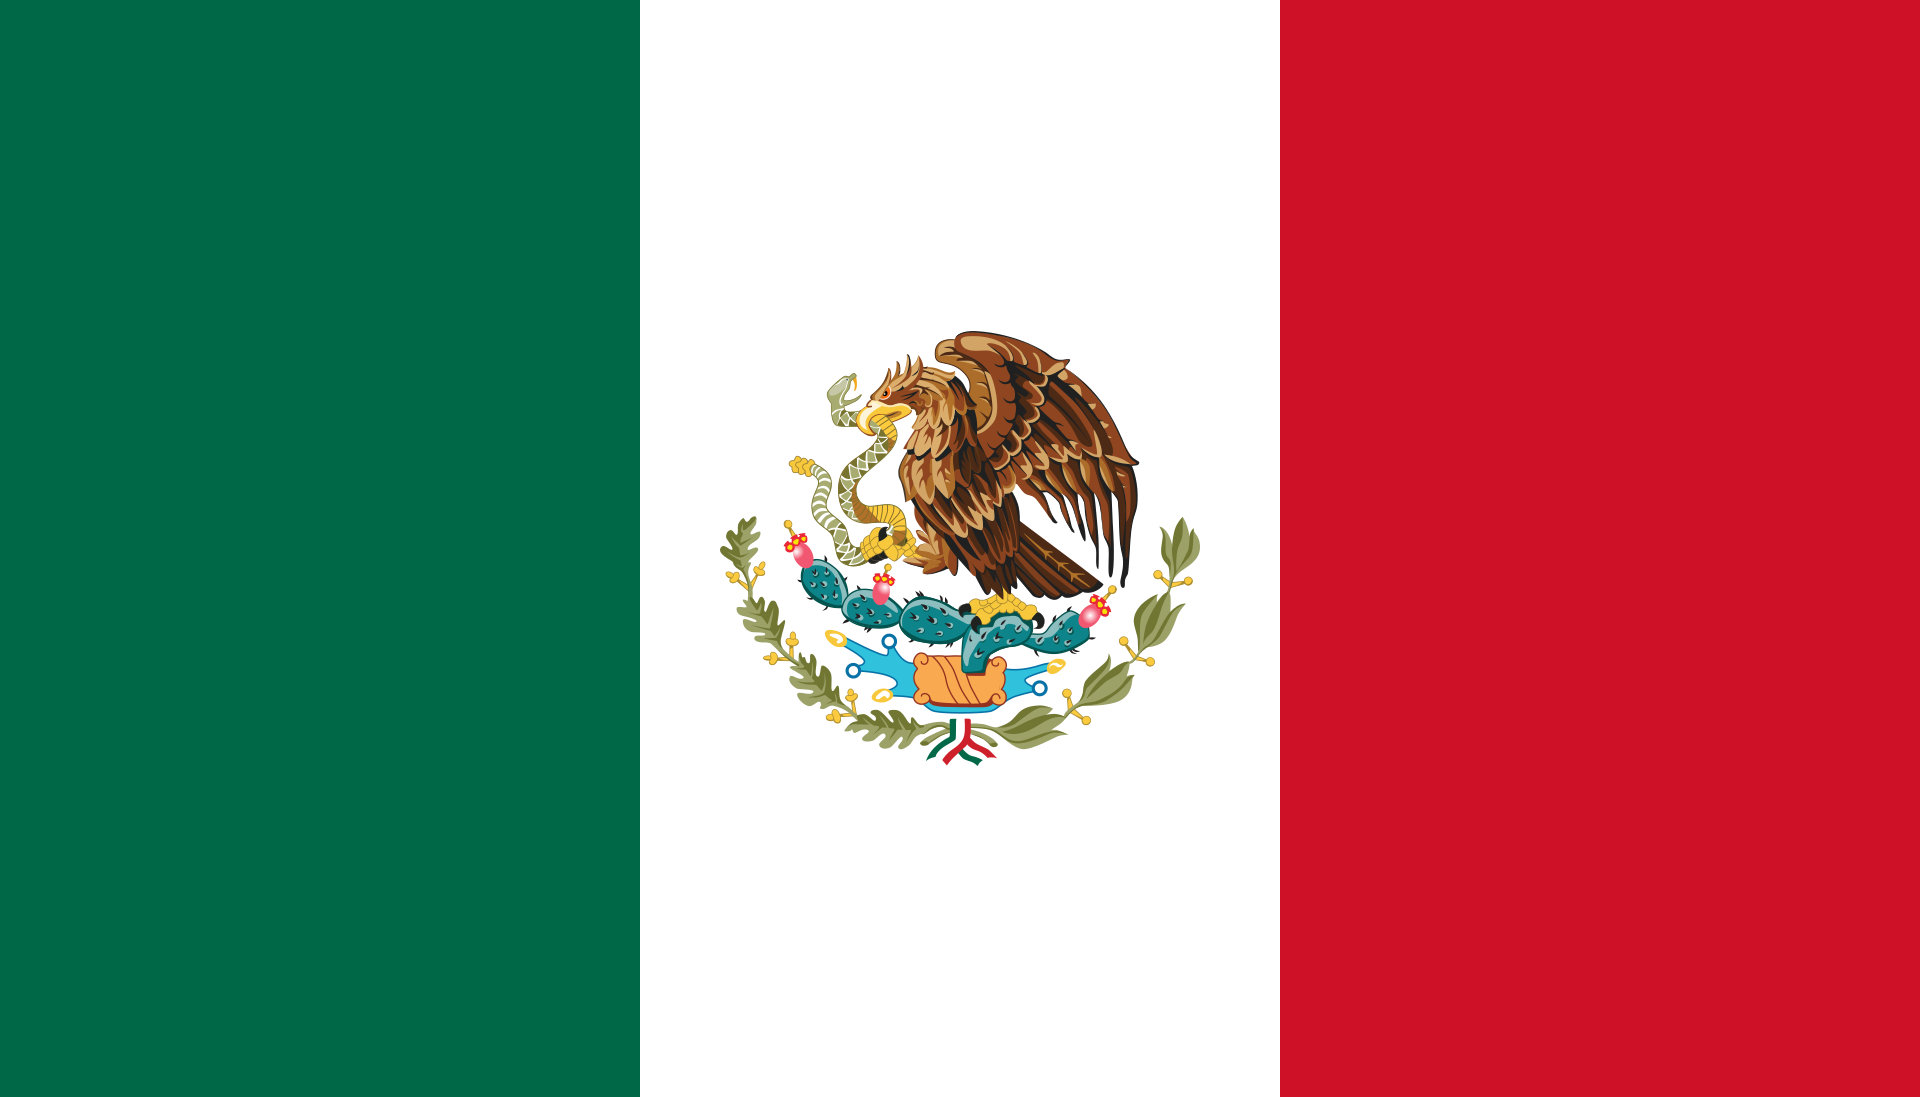 Imágenes y fondos de pantalla de la bandera de México, Wallpapers hd Gratis